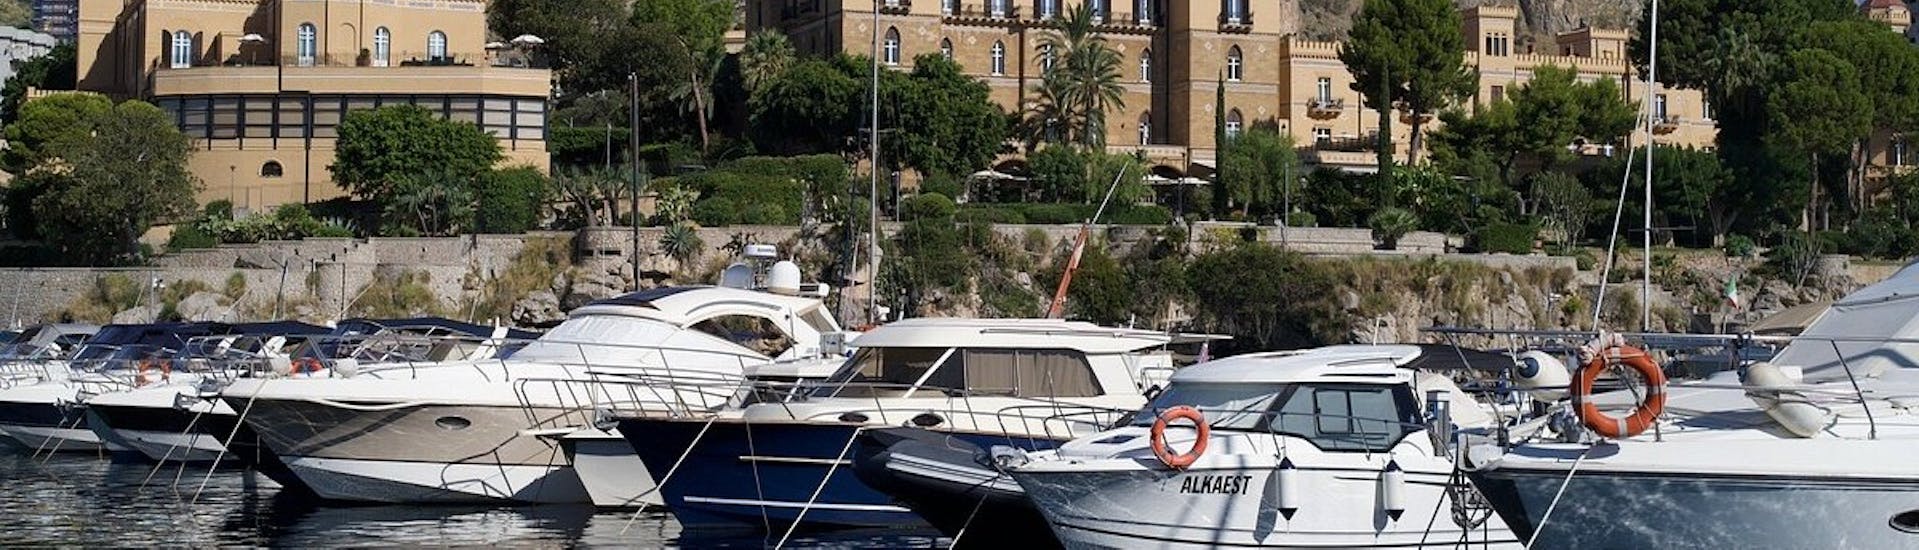 Barche al porto di Palermo, da dove parte la gita in barca a Vergine Maria, Addaura e Mondello con aperitivo con Luca e Angela Lady Grace Palermo.